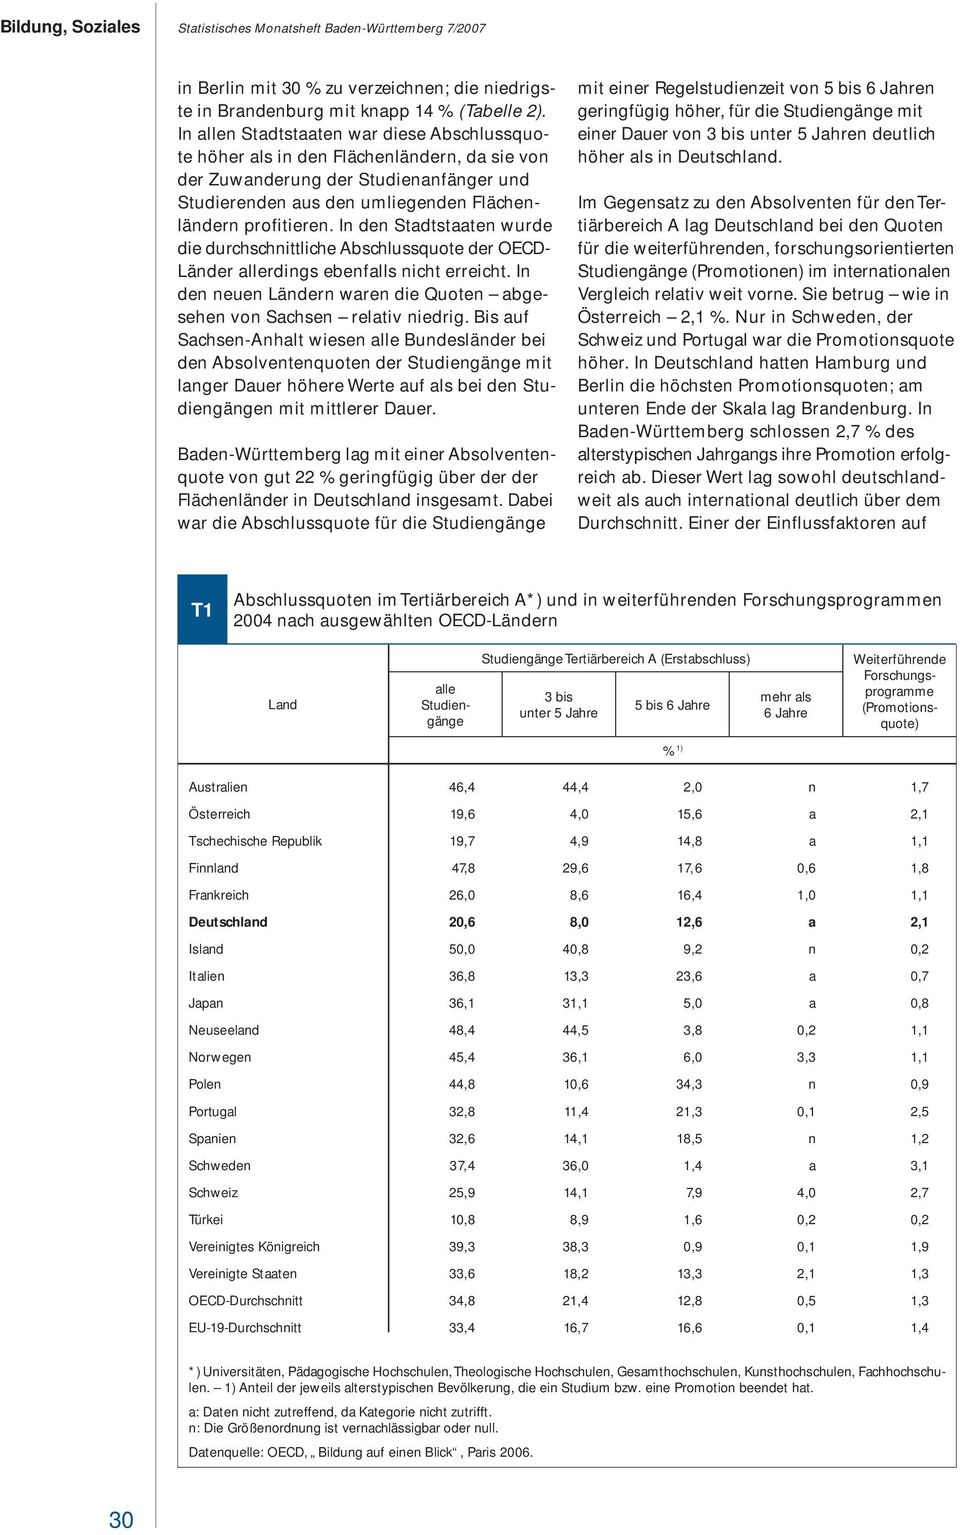 In den Stadtstaaten wurde die durchschnittliche Abschlussquote der OECD- Länder allerdings ebenfalls nicht erreicht. In den neuen Ländern waren die Quoten abgesehen von Sachsen relativ niedrig.